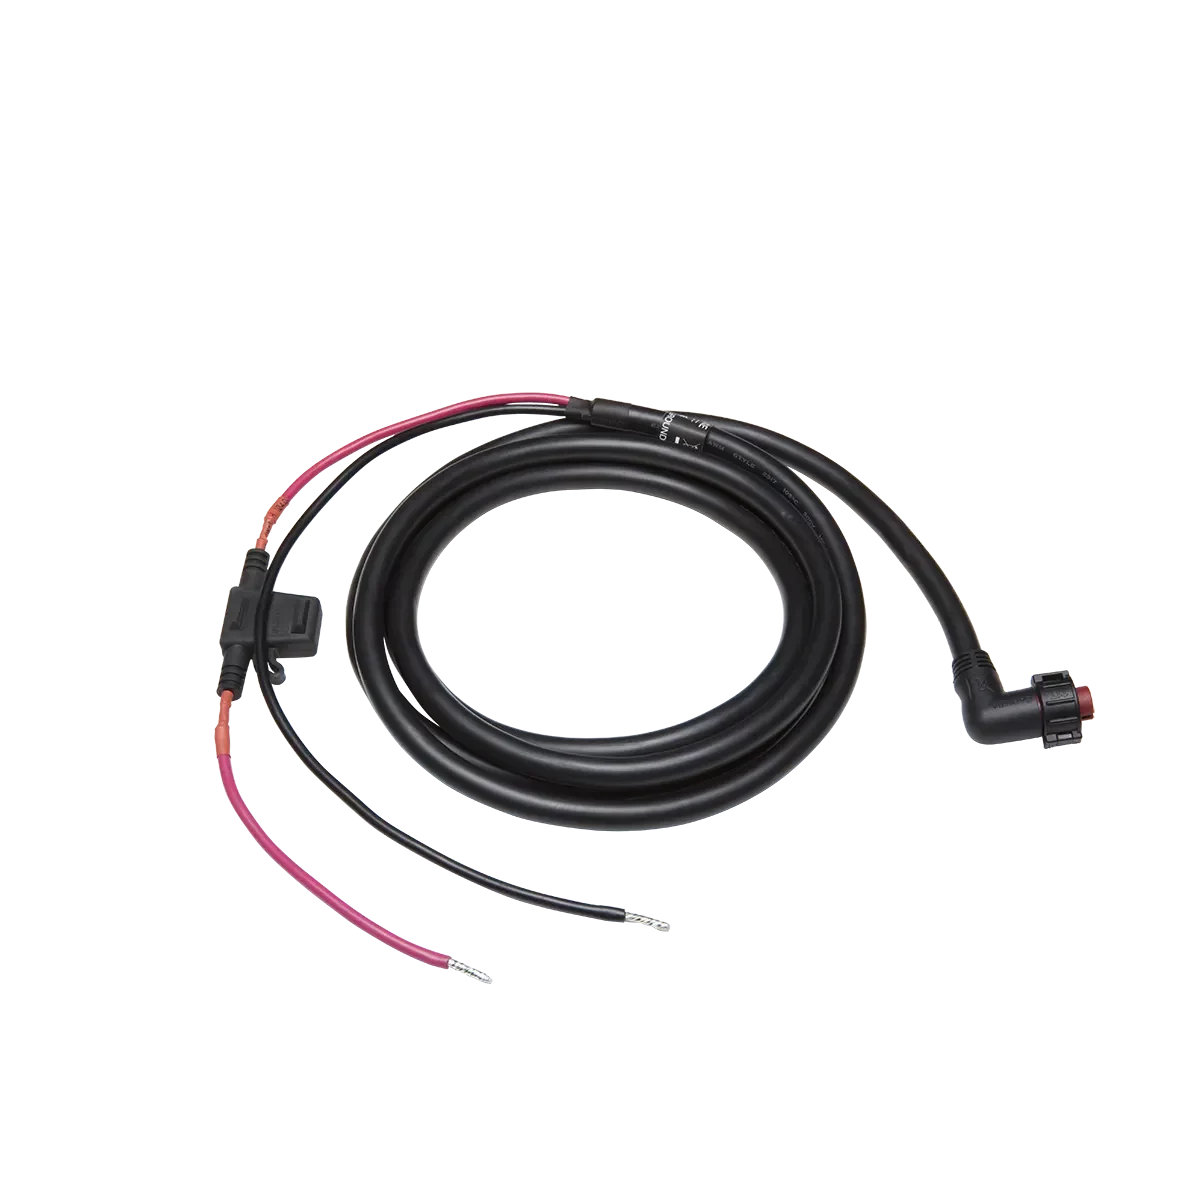 Garmin threaded power cable 010-11425-13